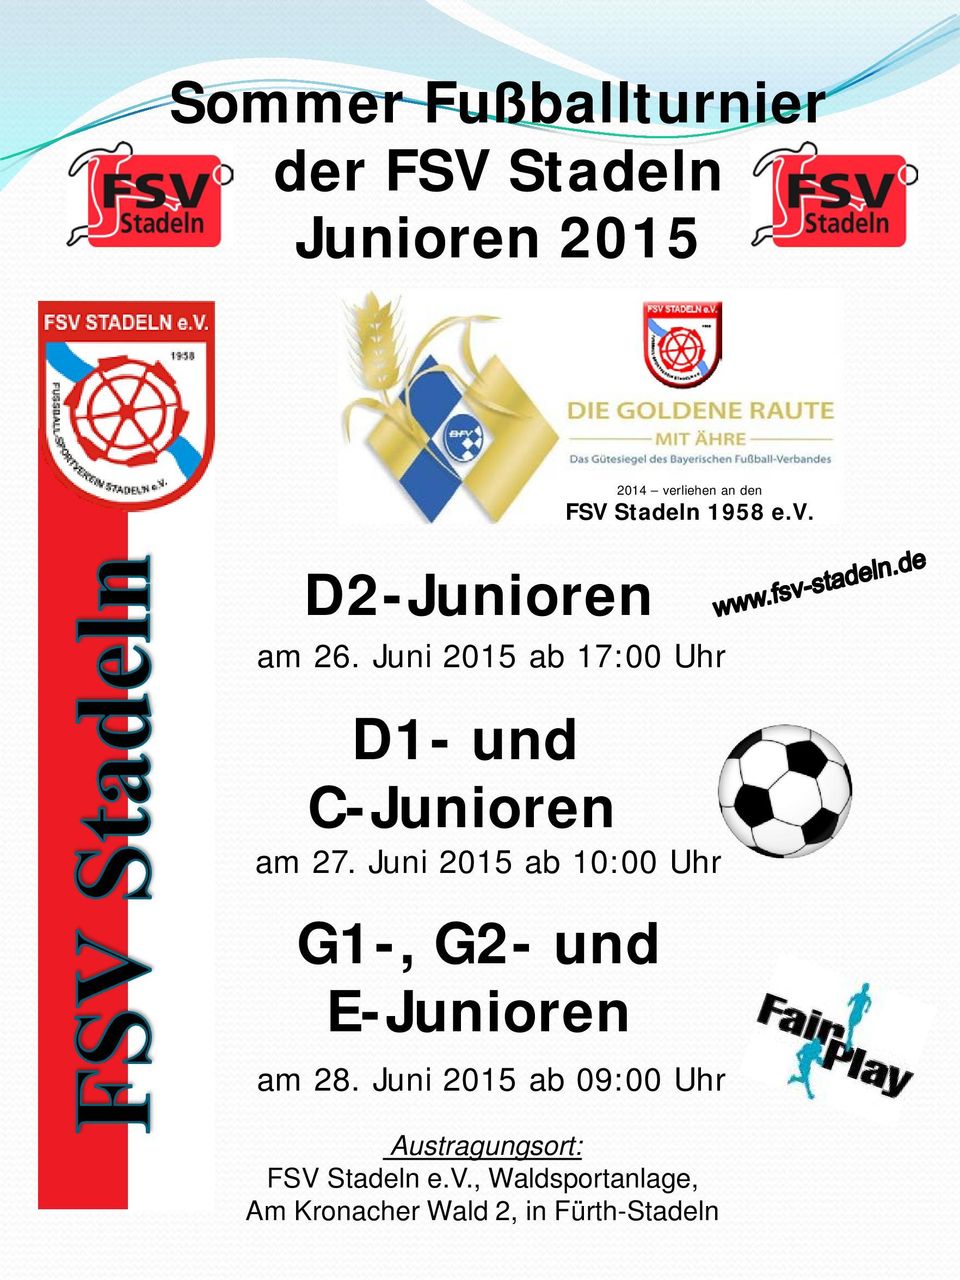 Juni 2015 ab 10:00 Uhr G1-, G2- und E-Junioren 2014 verliehen an den FSV Stadeln